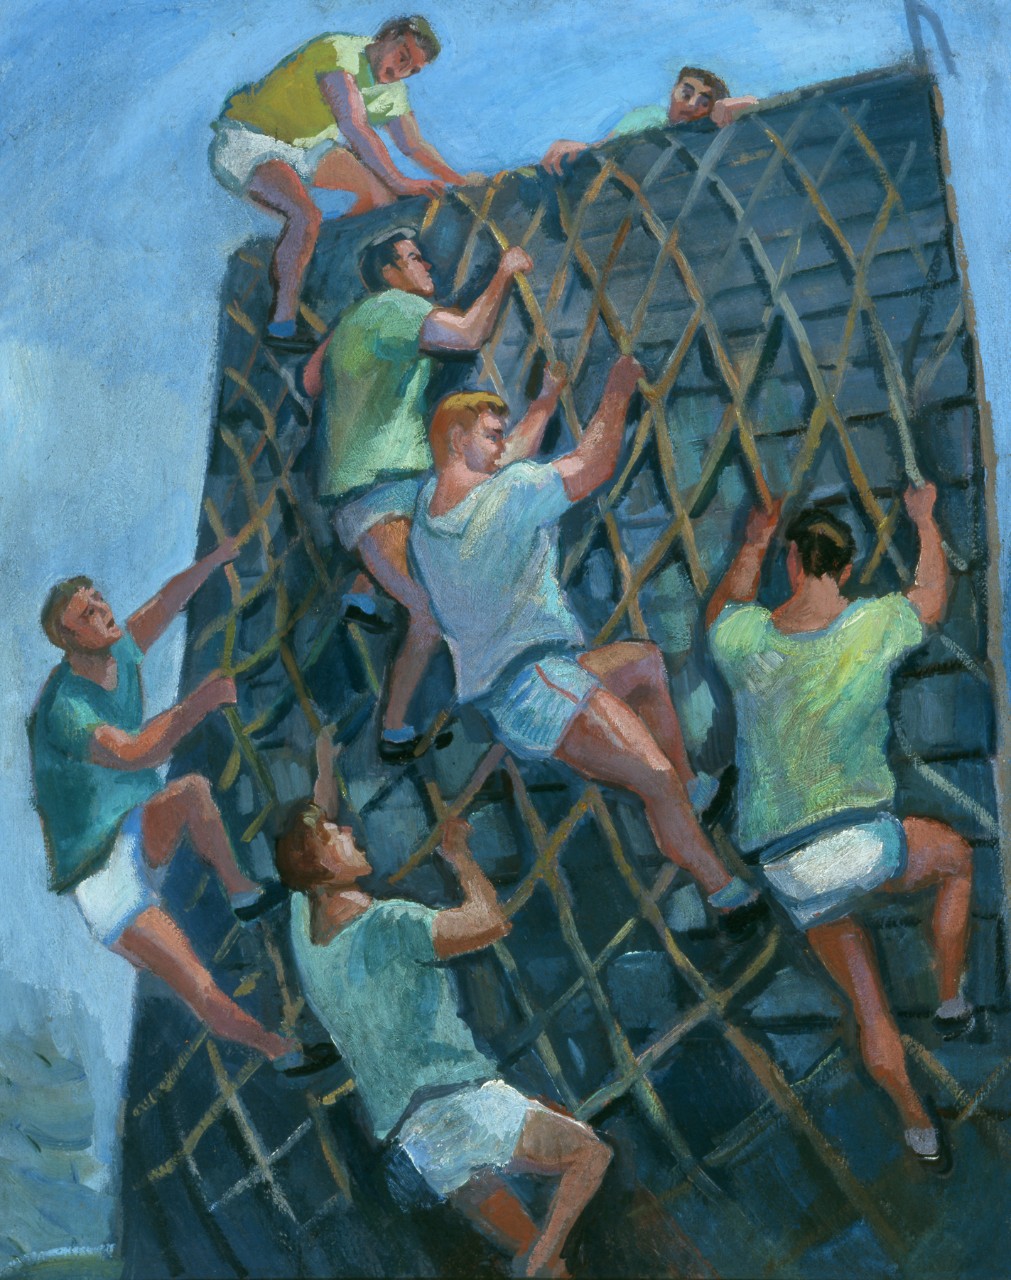 Men climb up a cargo net on a barricade